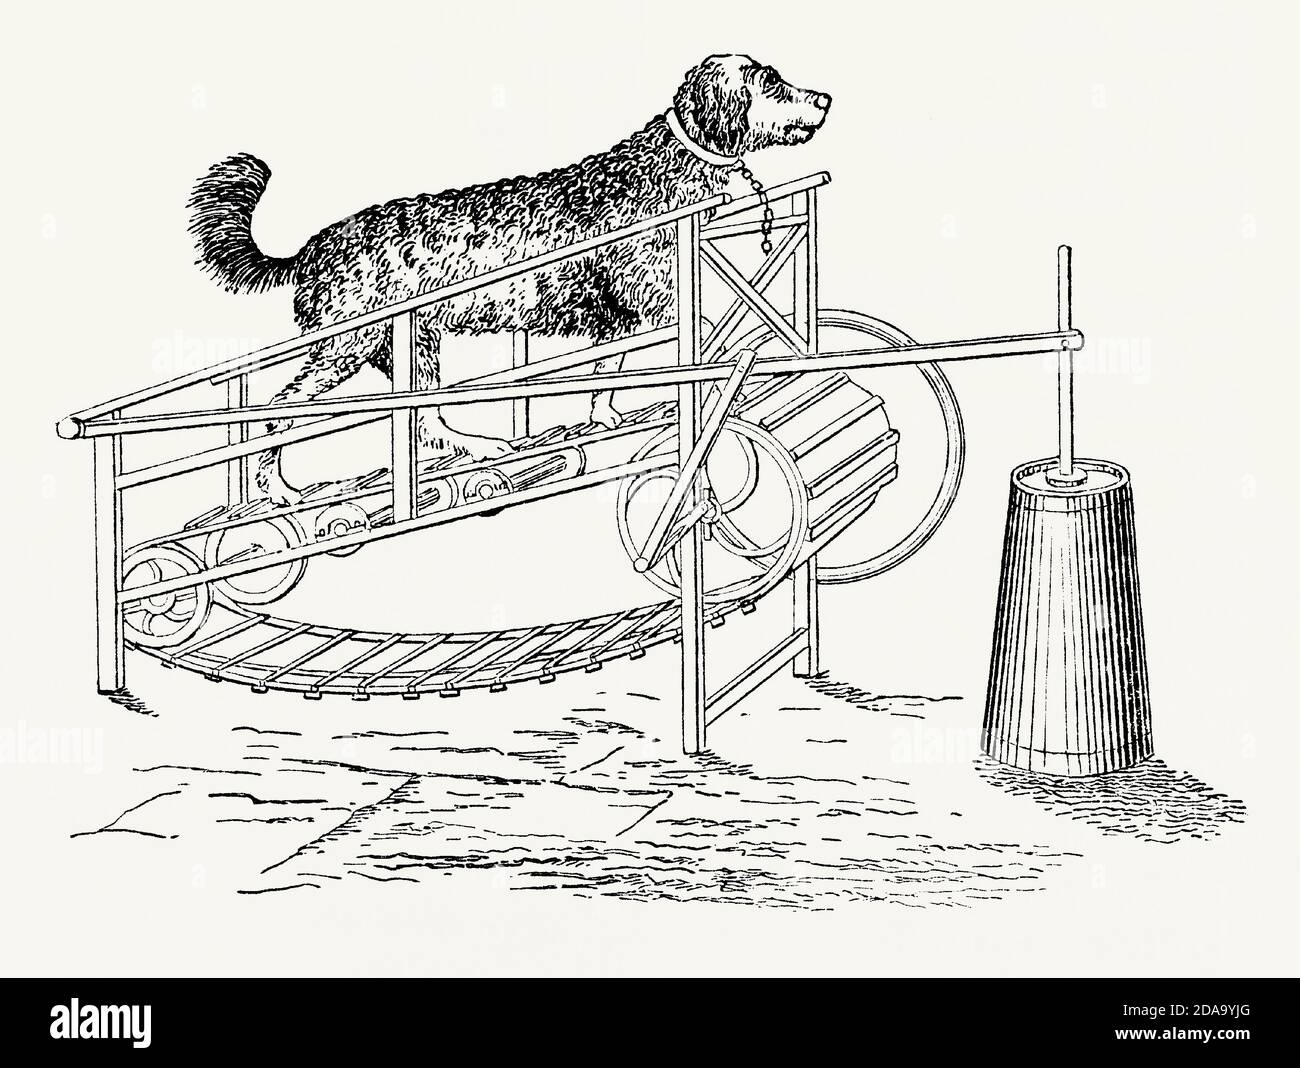 Eine alte Gravur von Maschinen, die von einem Hund angetrieben werden. Es ist aus einem viktorianischen Maschinenbaubuch der 1880er Jahre. Der bebilderte Hund läuft auf einem Gürtel oder Laufband und fährt einen ‘dasher’ in einer Milch- oder Butterfass (rechts). Ein Tiermotor ist eine Maschine, die von einem Tier angetrieben wird. Pferde, Esel, Ochsen, Hunde und Menschen wurden auf diese Weise eingesetzt. Hunde wurden oft in Häusern verwendet. In einer Küche könnte ein Hund (ein ‘„Drehspieß-Hund“, der in einem großen Hamsterrad läuft und von einem Stück heißer Kohle gezwungen wird, sich zu bewegen) einen rotierenden Spieß durch einen Kettenmechanismus betreiben. Stockfoto